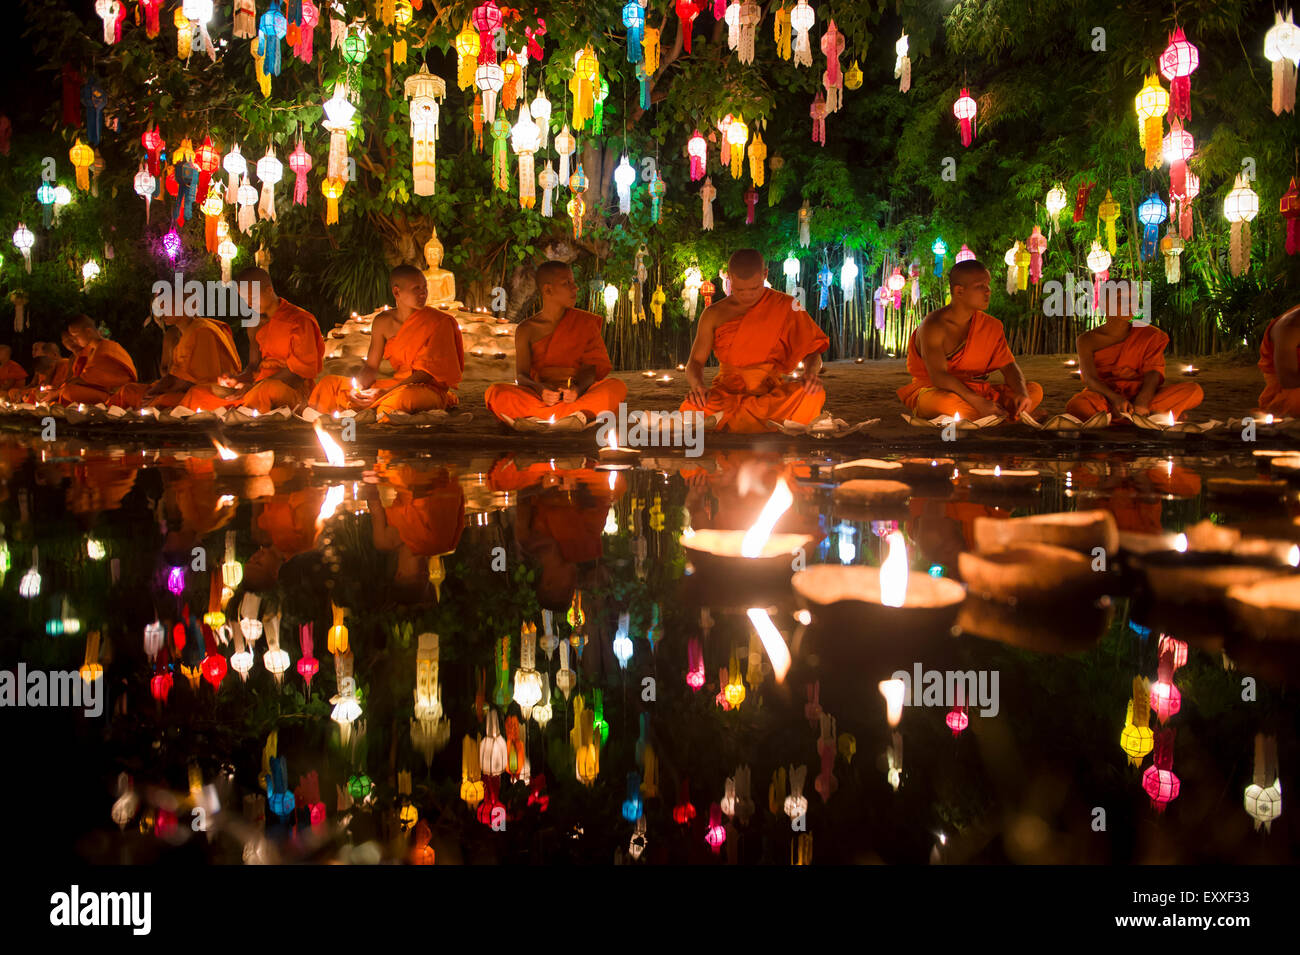 CHIANG MAI, Thailandia - Novembre 06, 2014: giovani monaci buddisti sit meditando in un festival delle luci Loi krathong cerimonia. Foto Stock